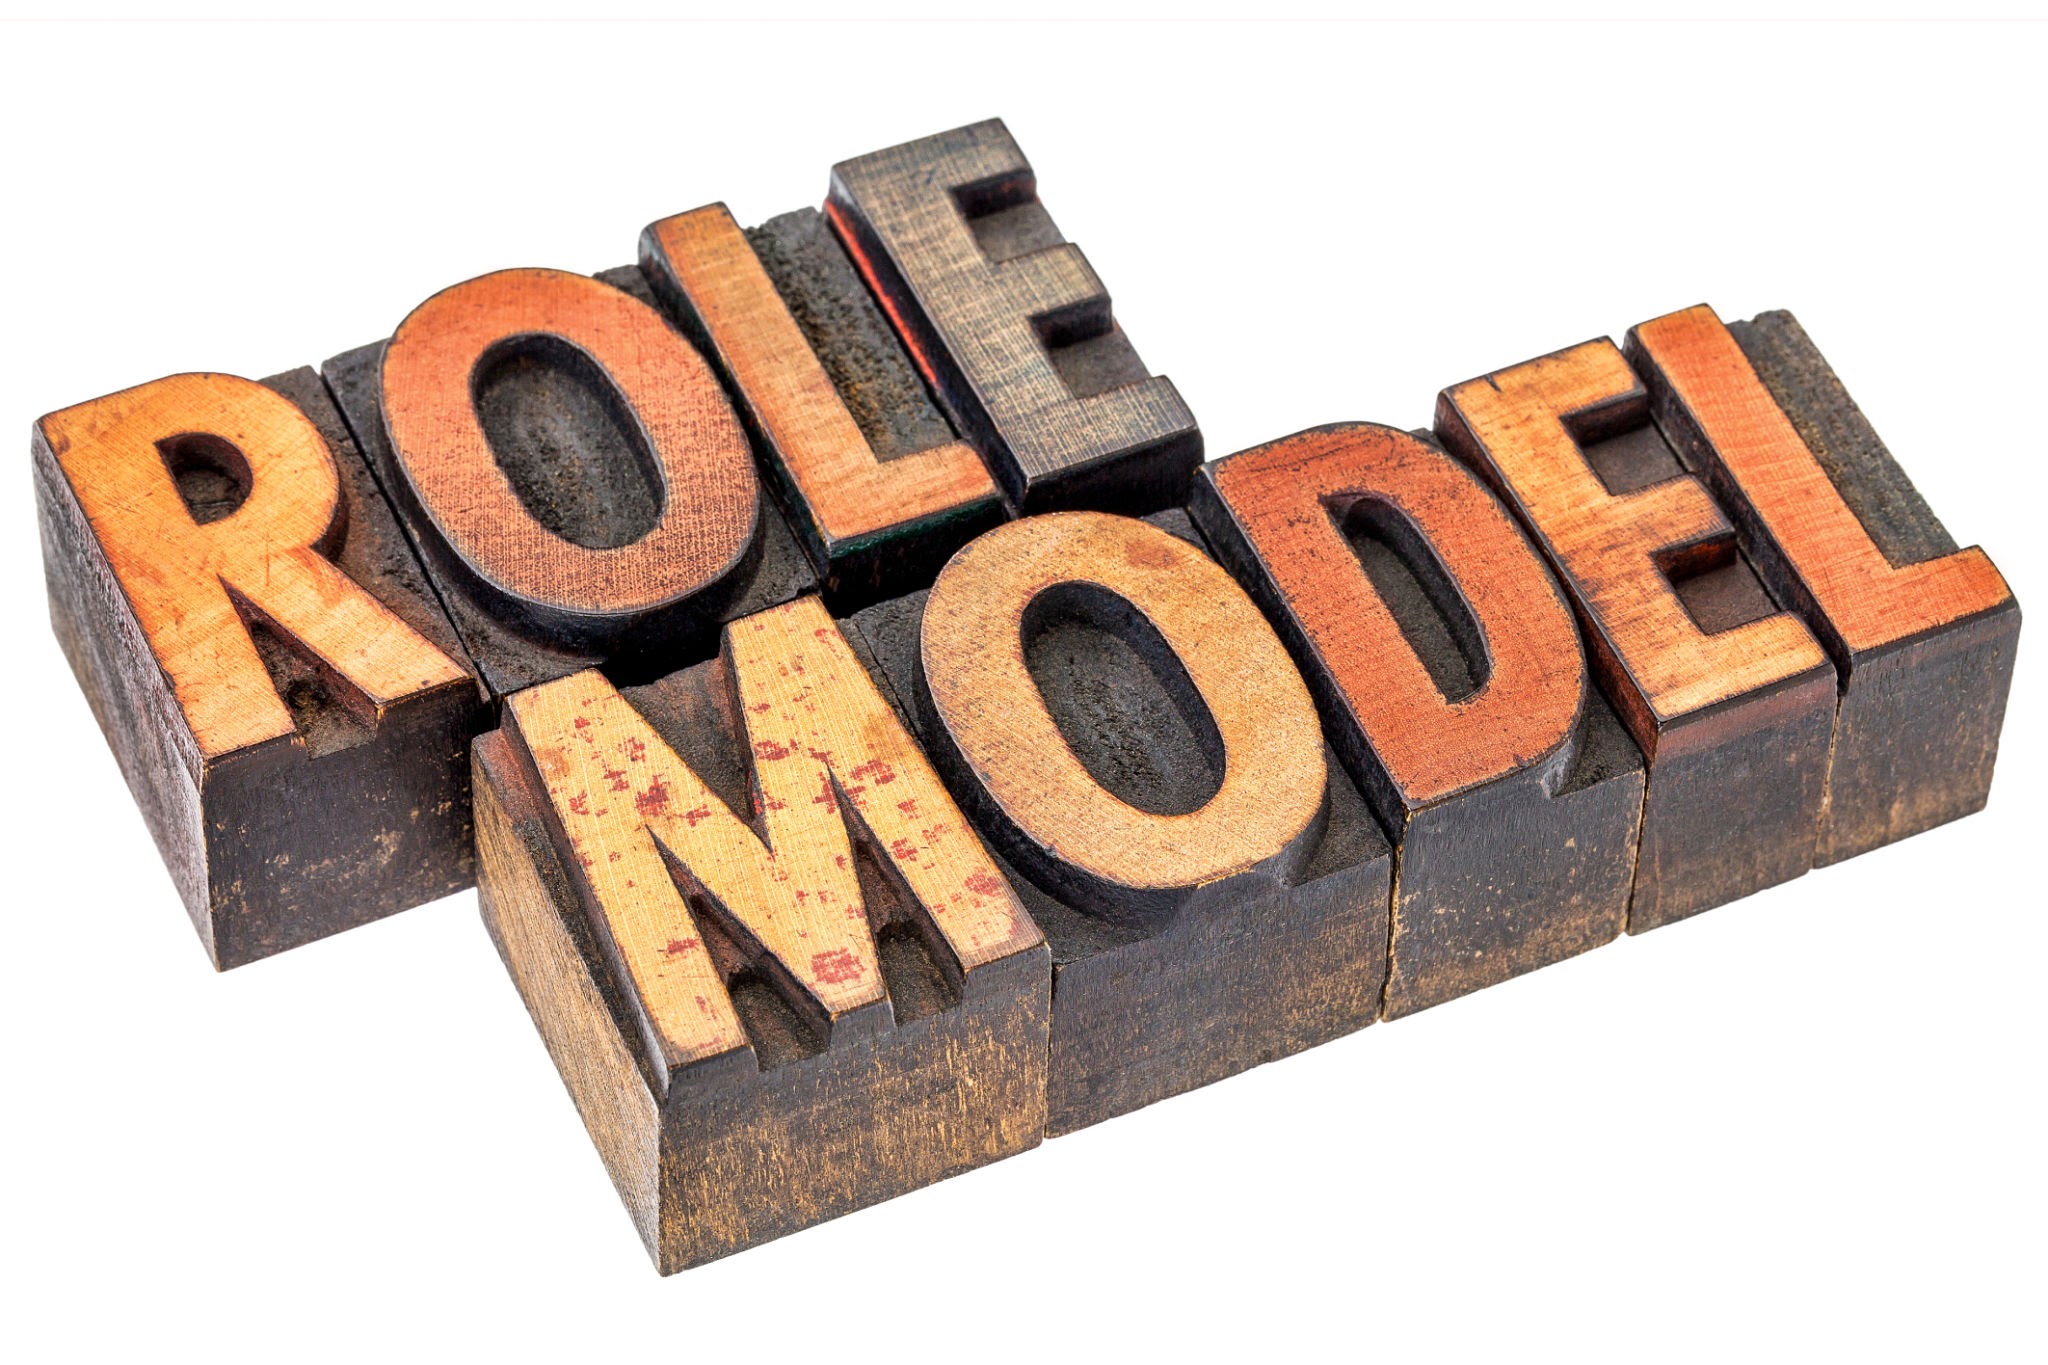 “Role Model” in block letters